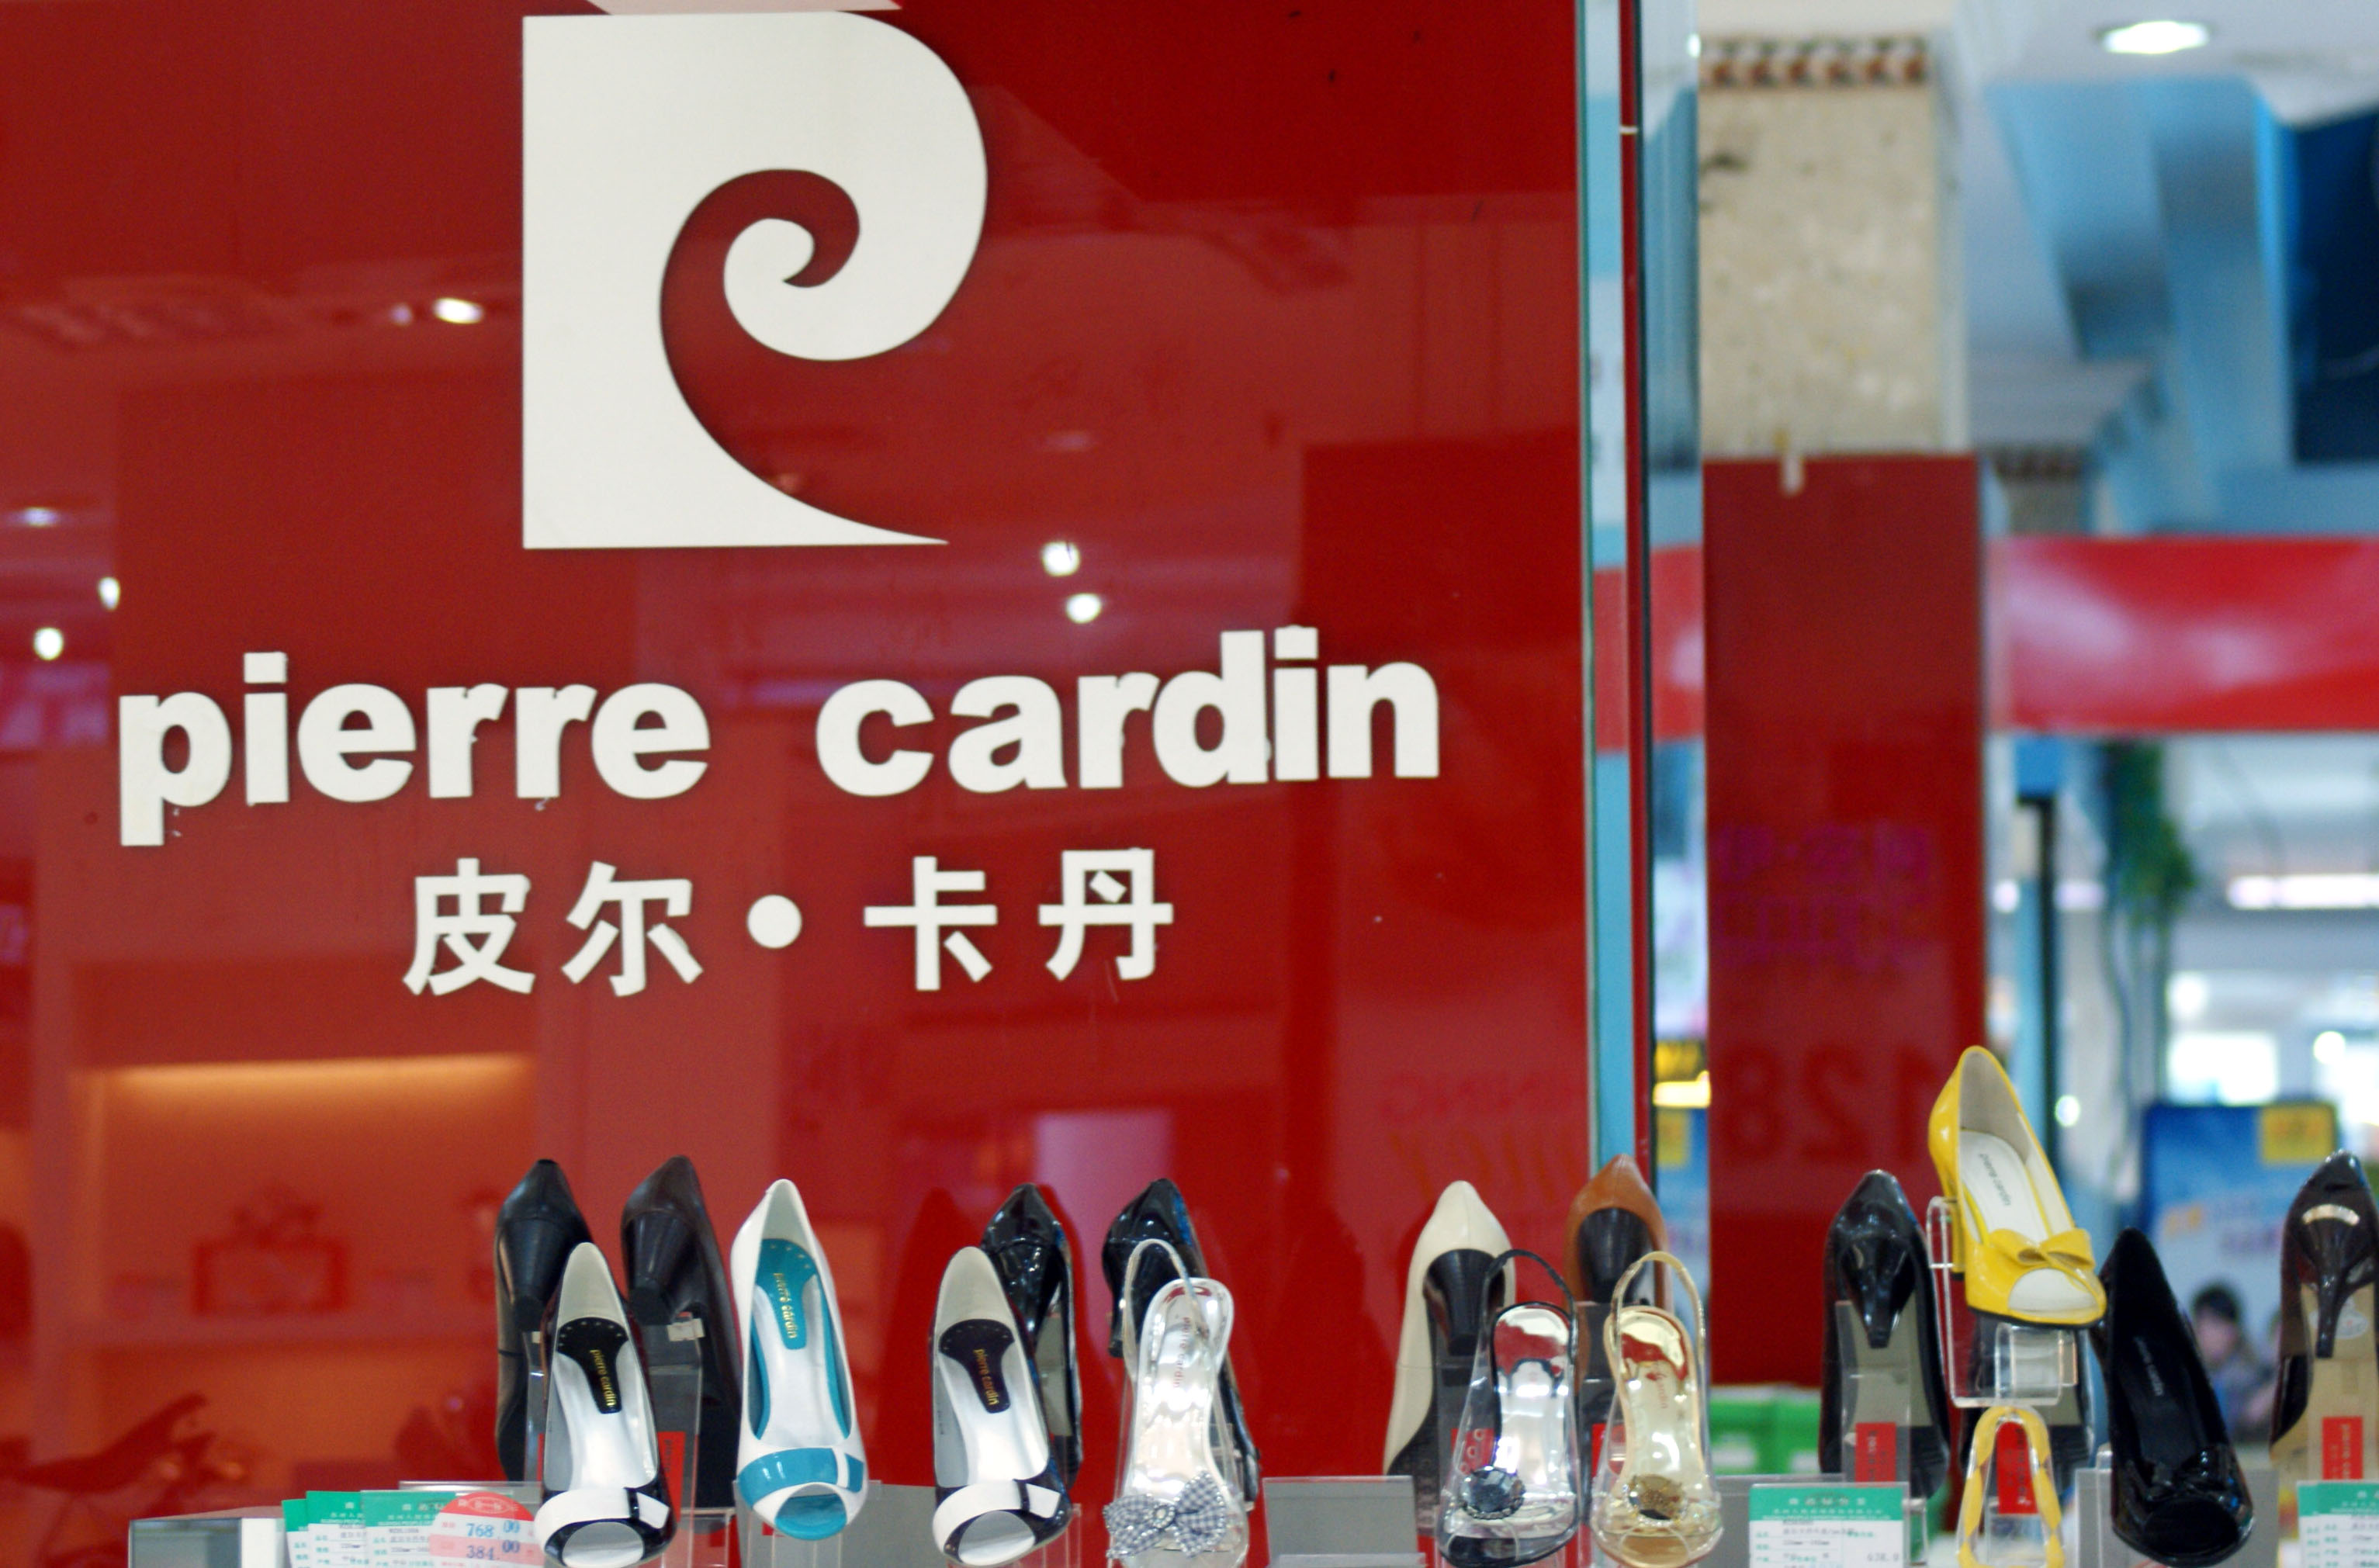 6月28日拍攝的蘇州一家商場的皮爾·卡丹專櫃。據報道，來自溫州及廣東的兩家民營企業最近已開始和法國著名時裝品牌皮爾·卡丹商談購買事宜，洽購價格將超過2億歐元。